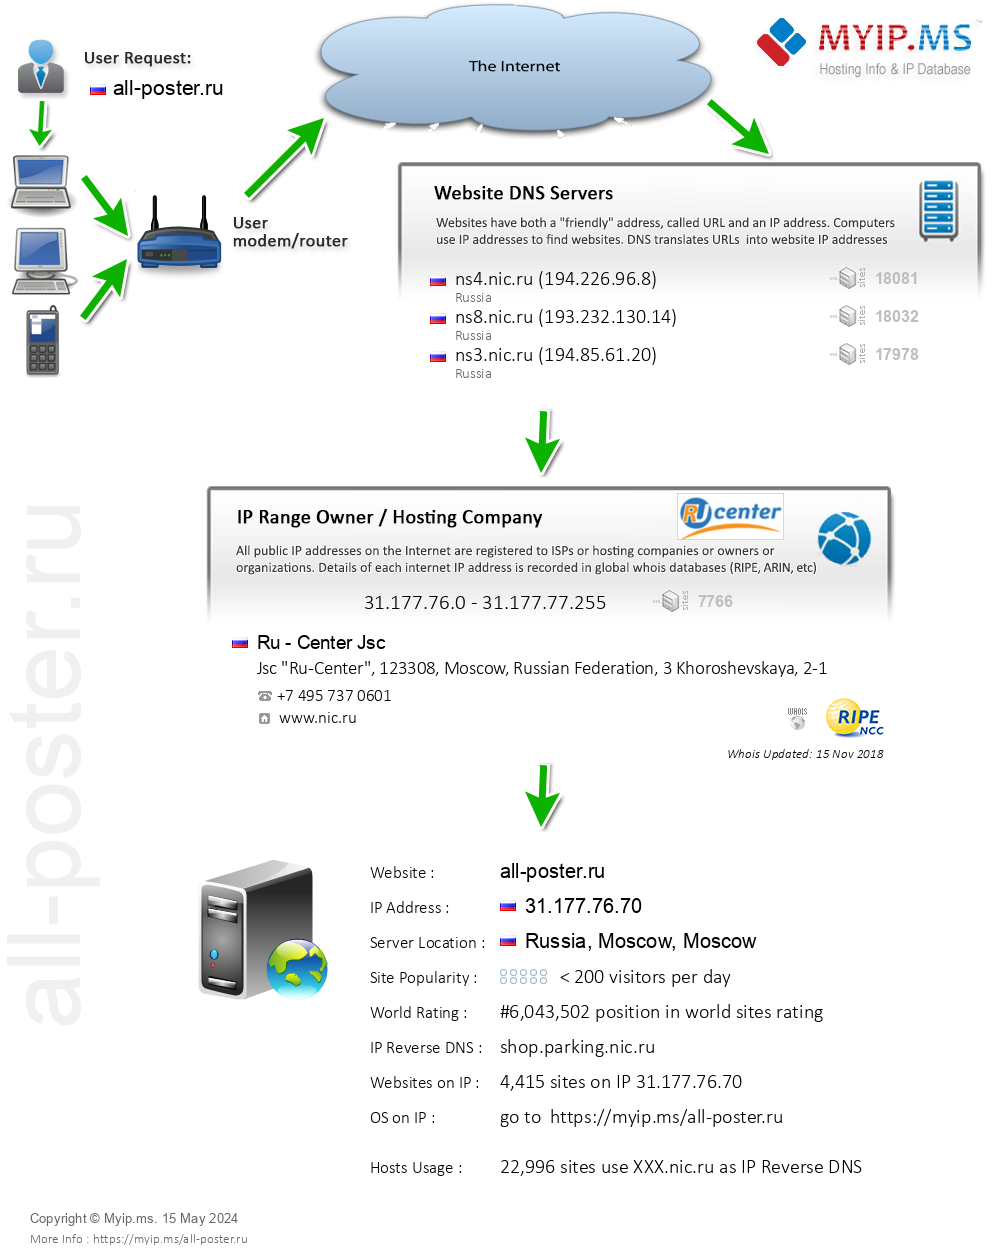 All-poster.ru - Website Hosting Visual IP Diagram